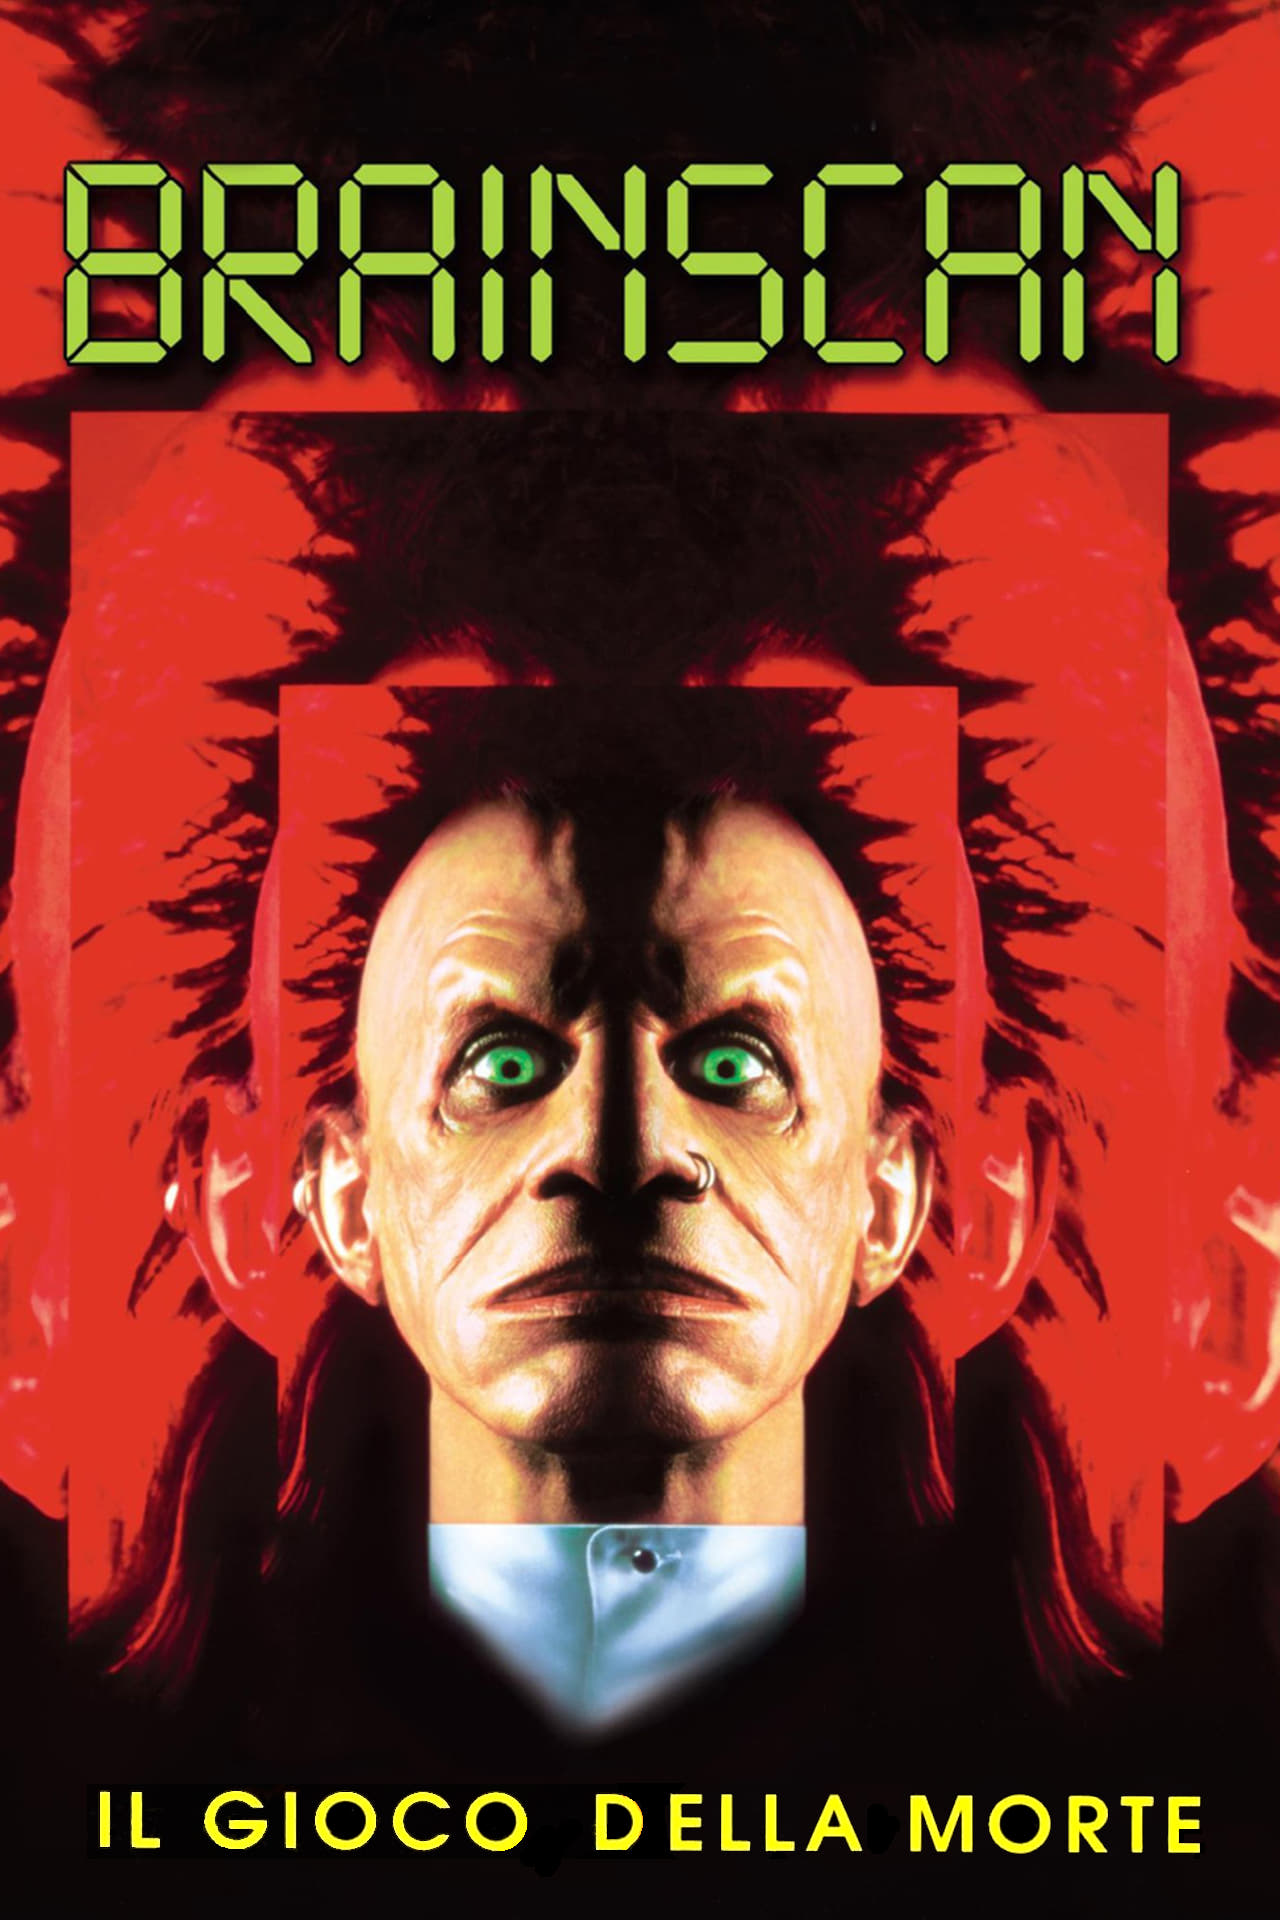 Brainscan – Il gioco della morte [HD] (1994)